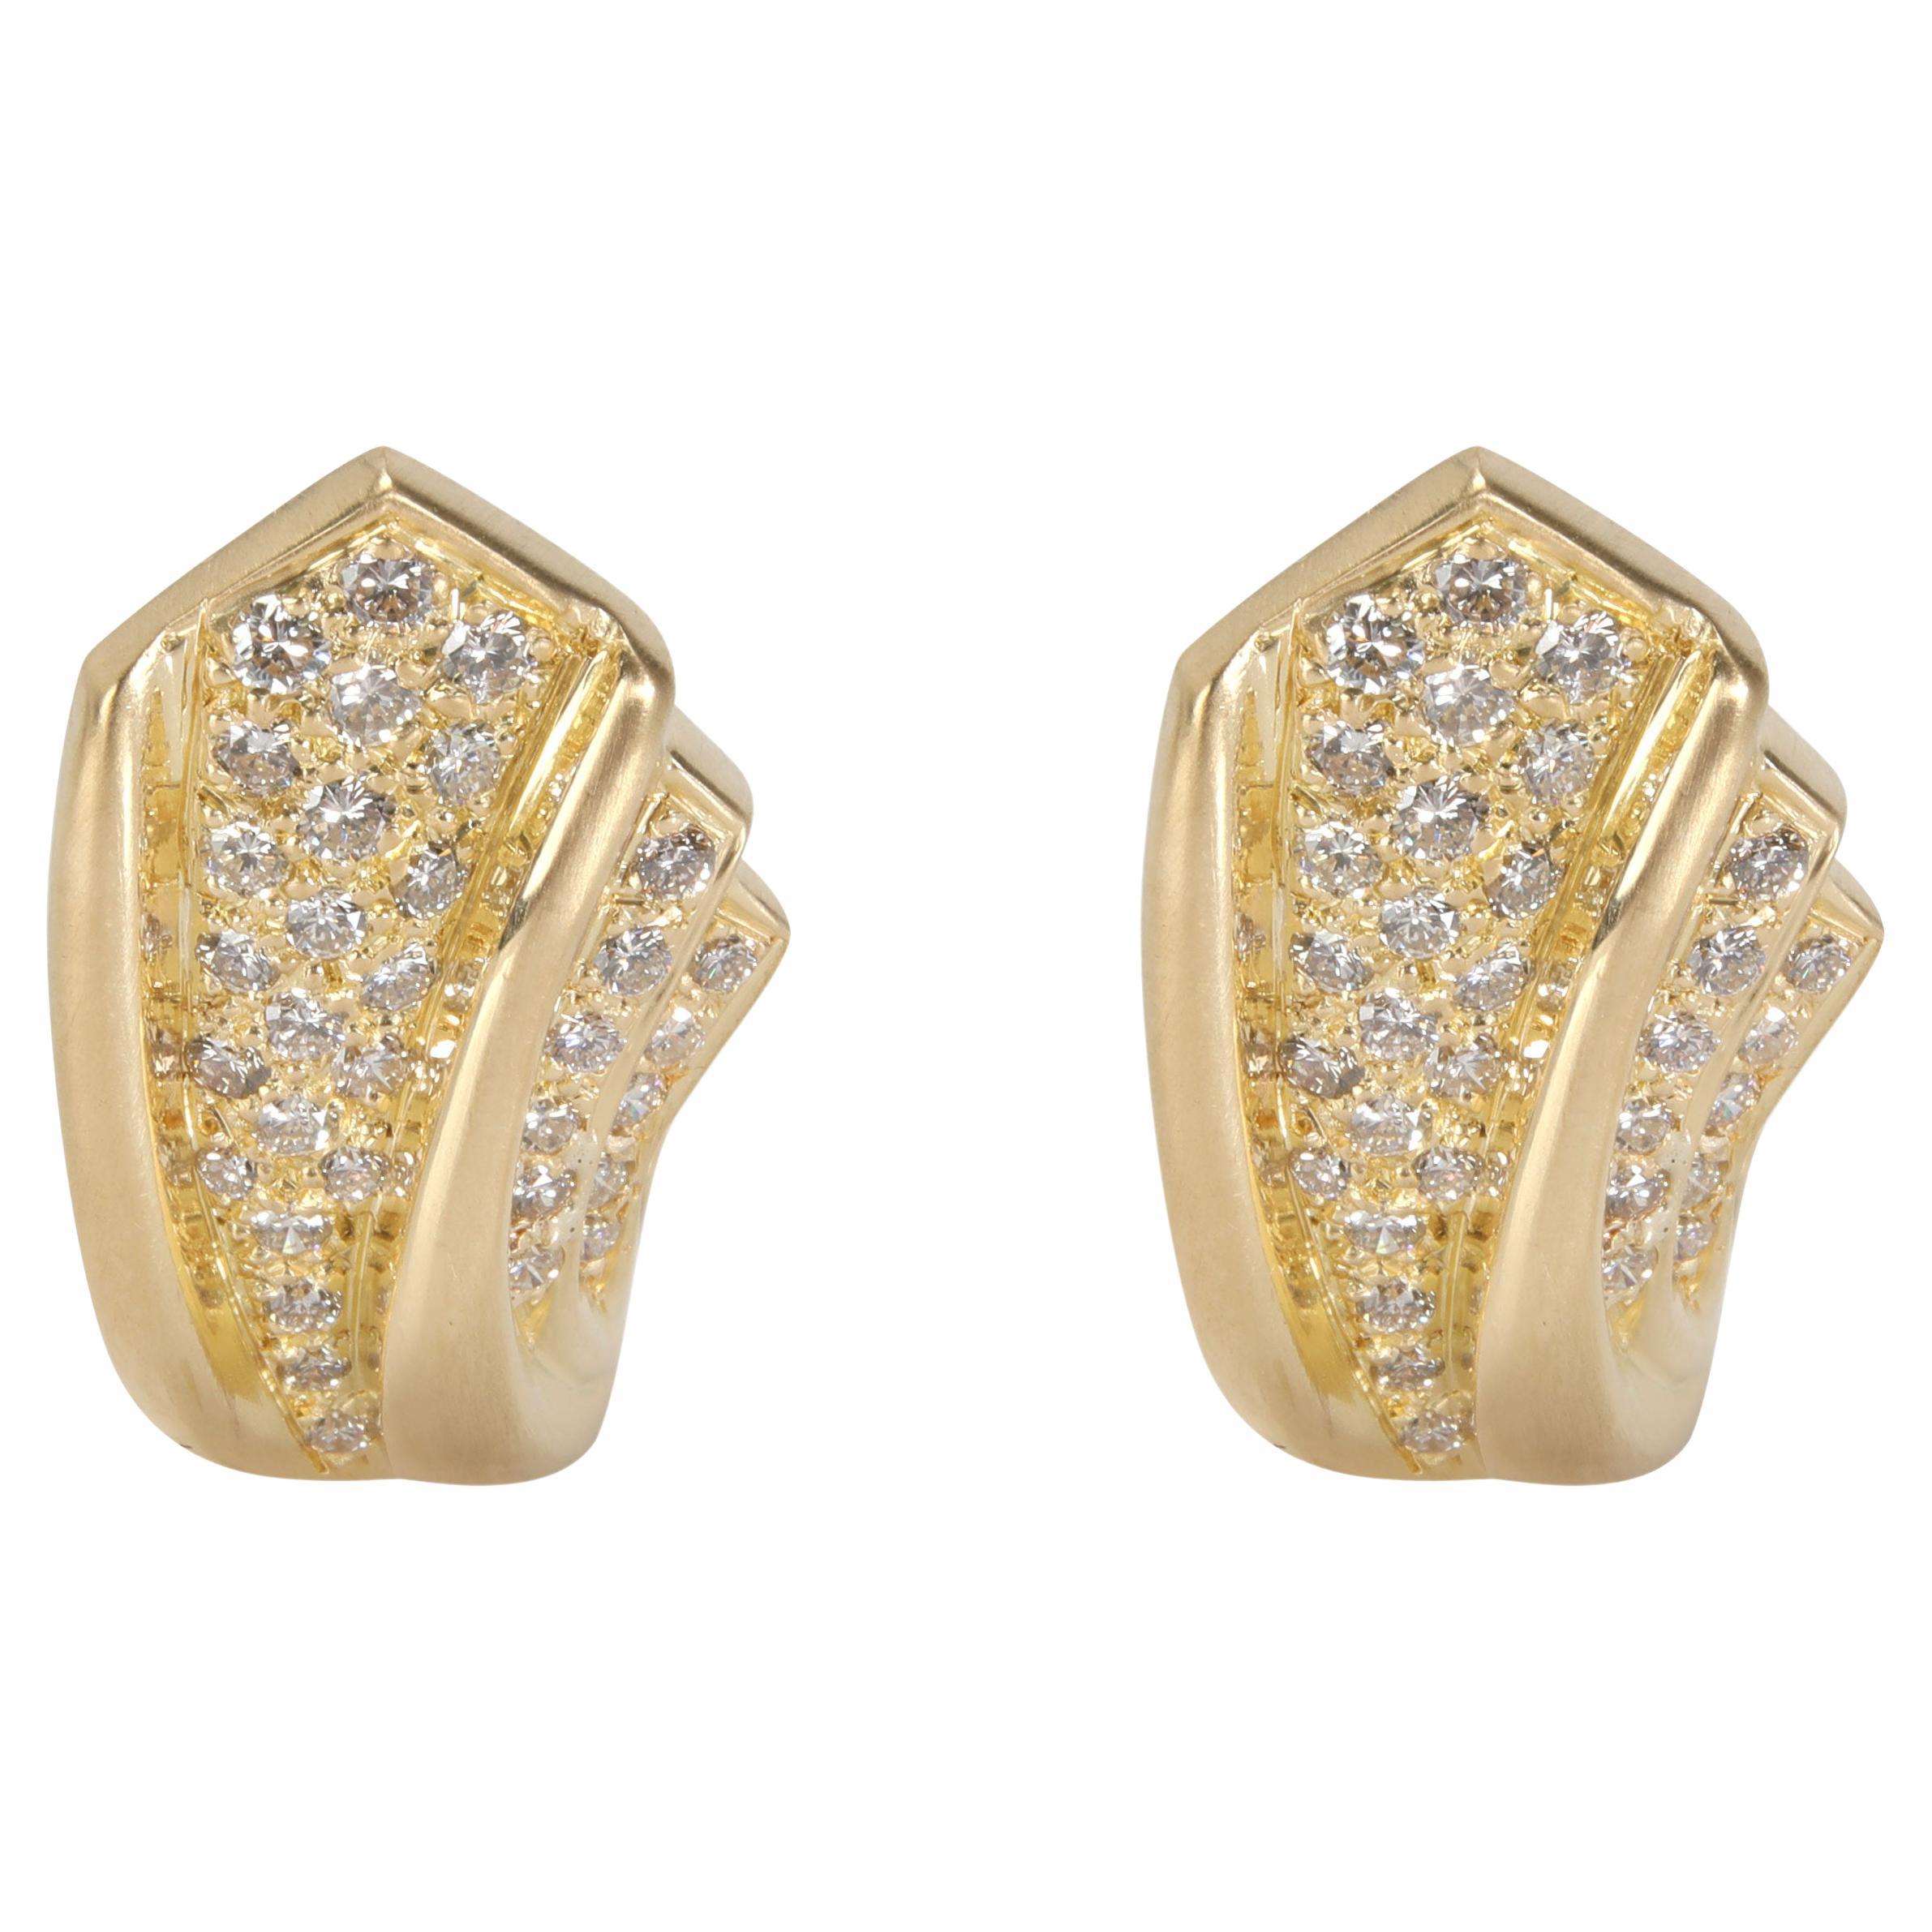 J Cape" Clip-On Diamond Earrings in 18K Yellow Gold 1.20 CTW"